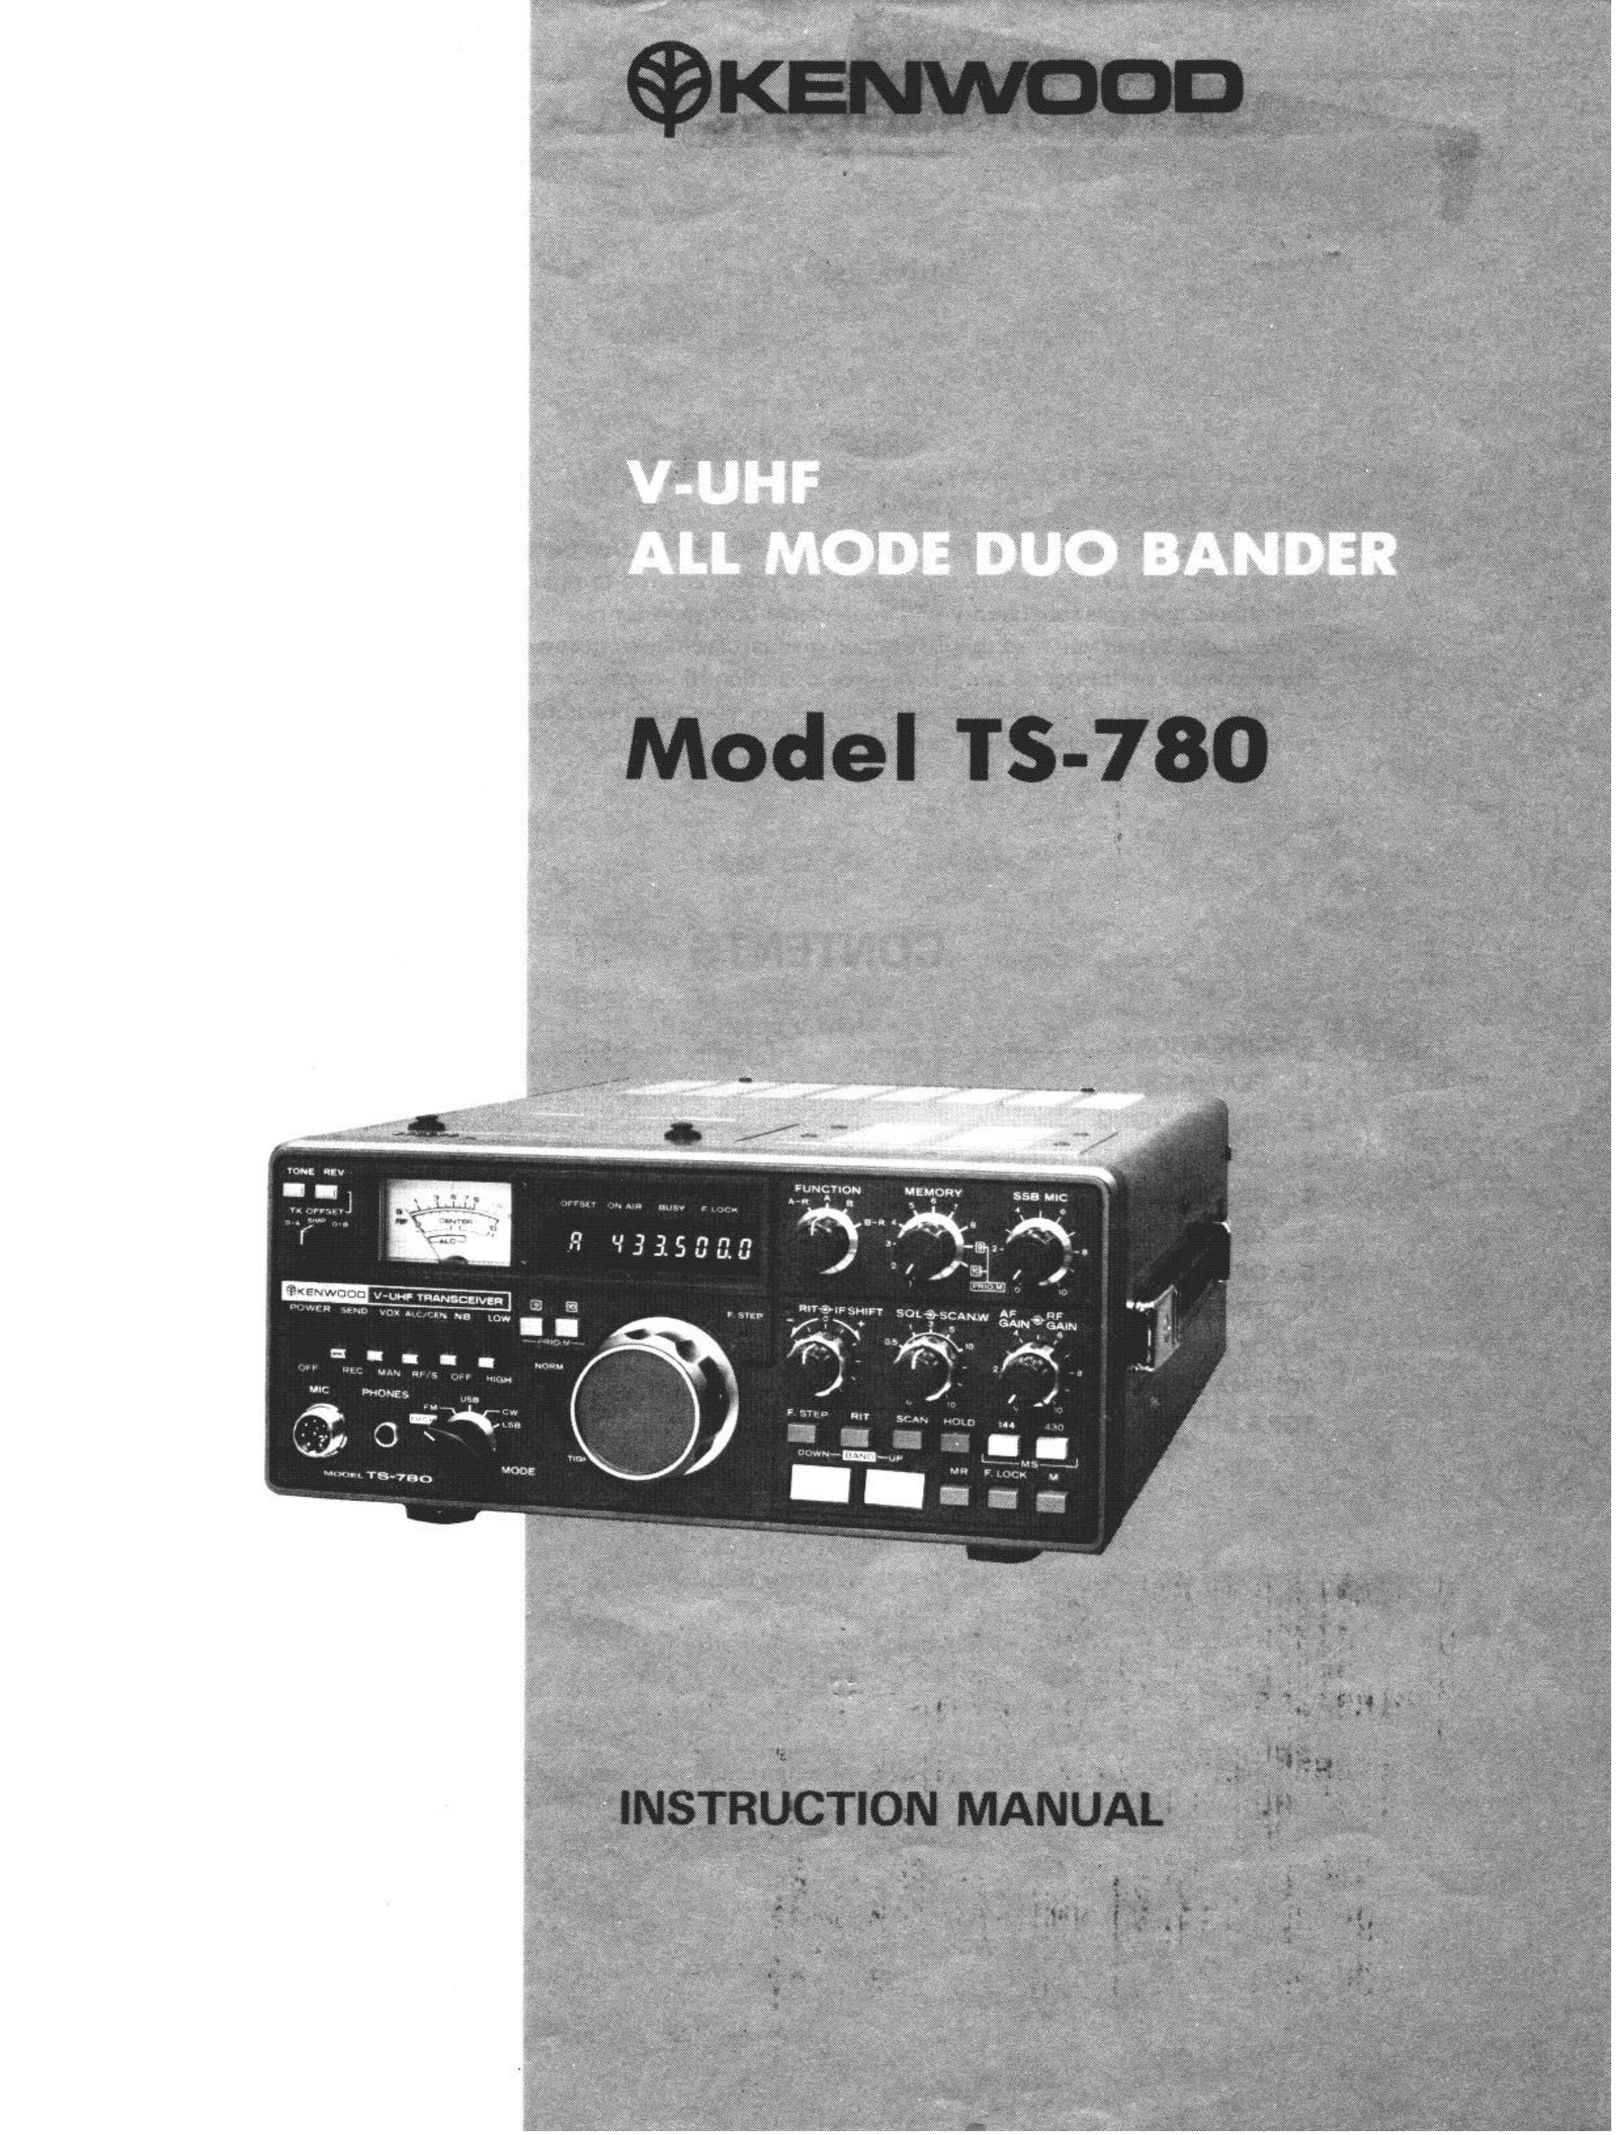 Kenwood TS-780 Satellite Radio User Manual